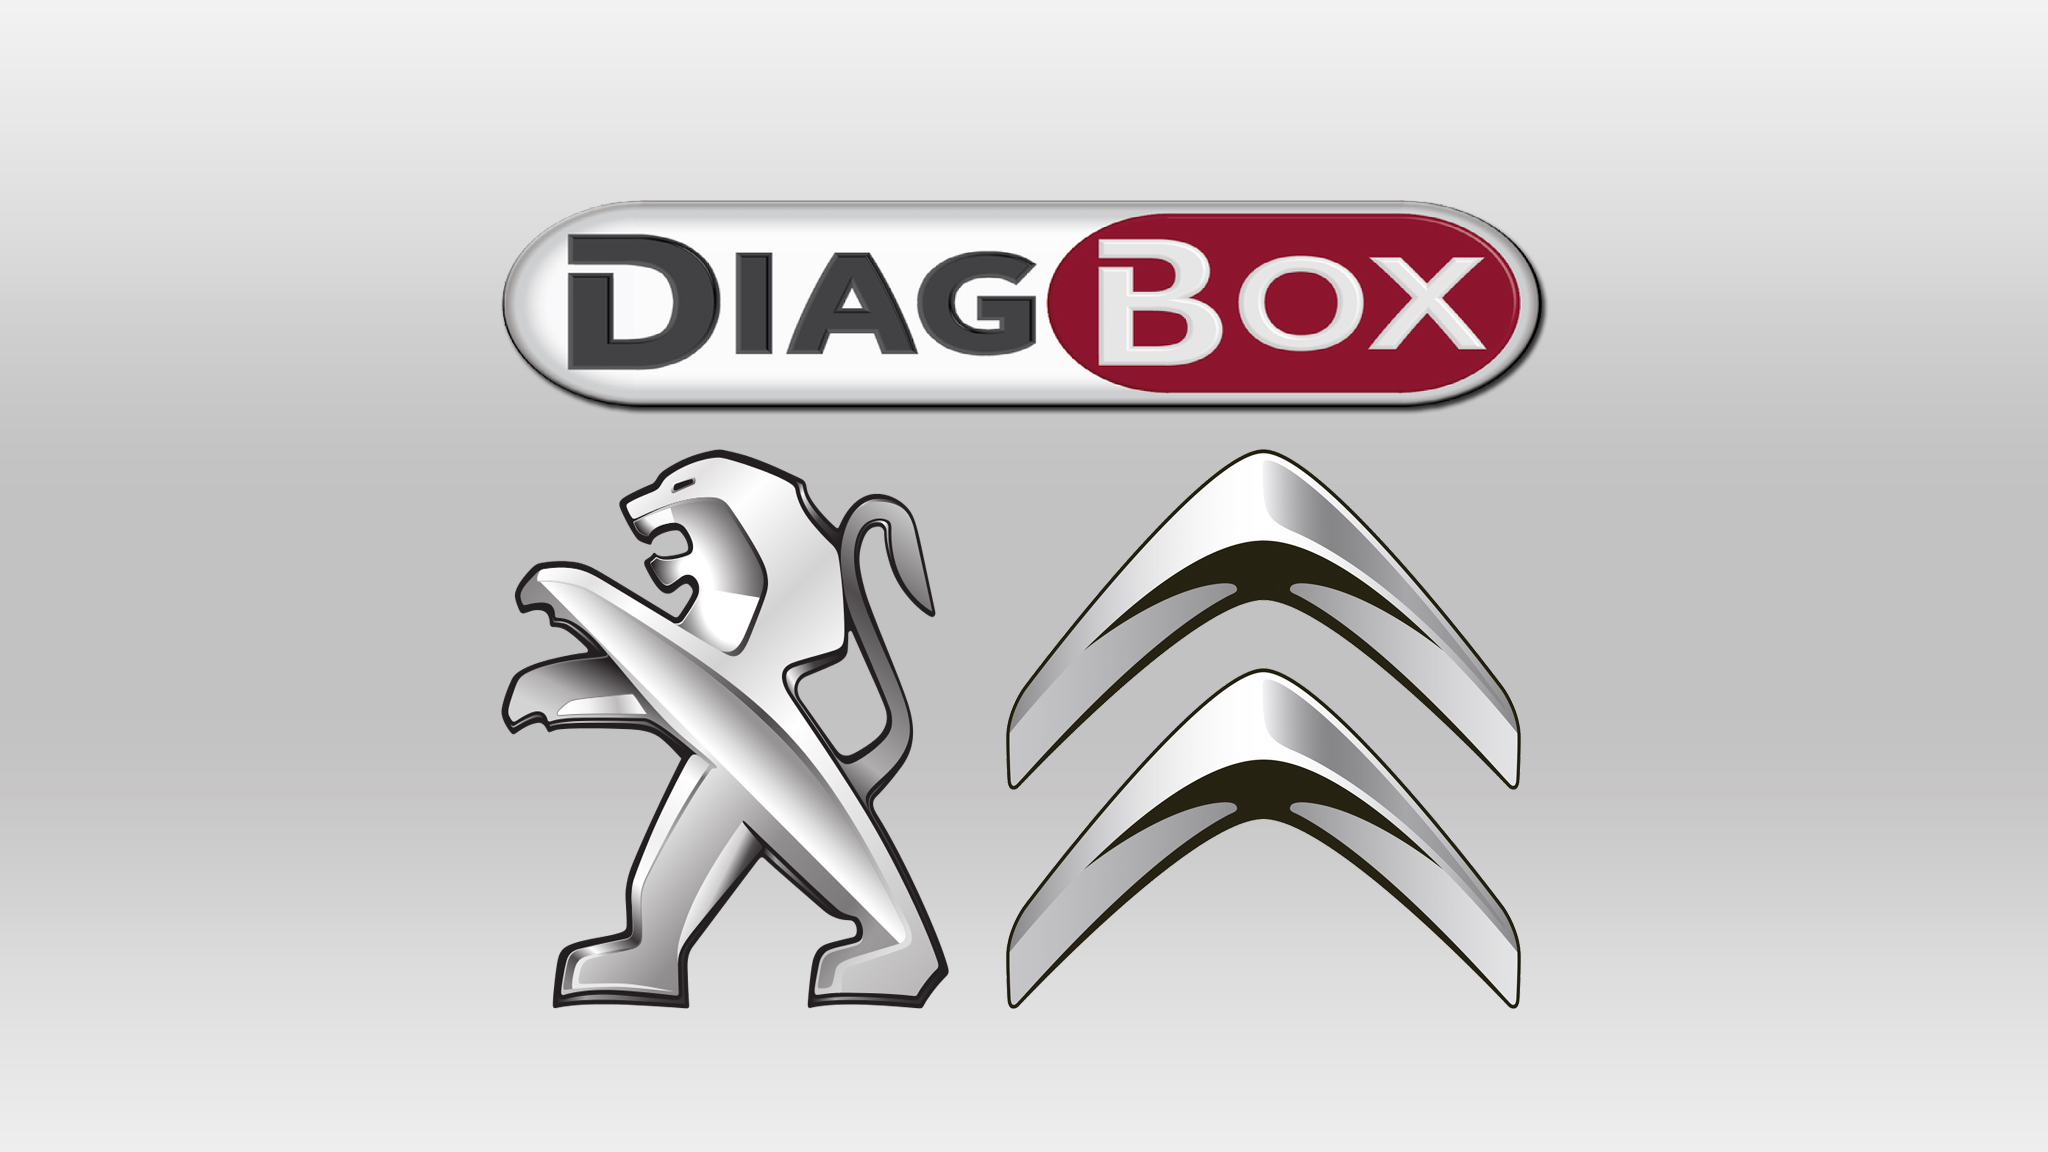 PSA DiagBox V783 819 Multilanguage